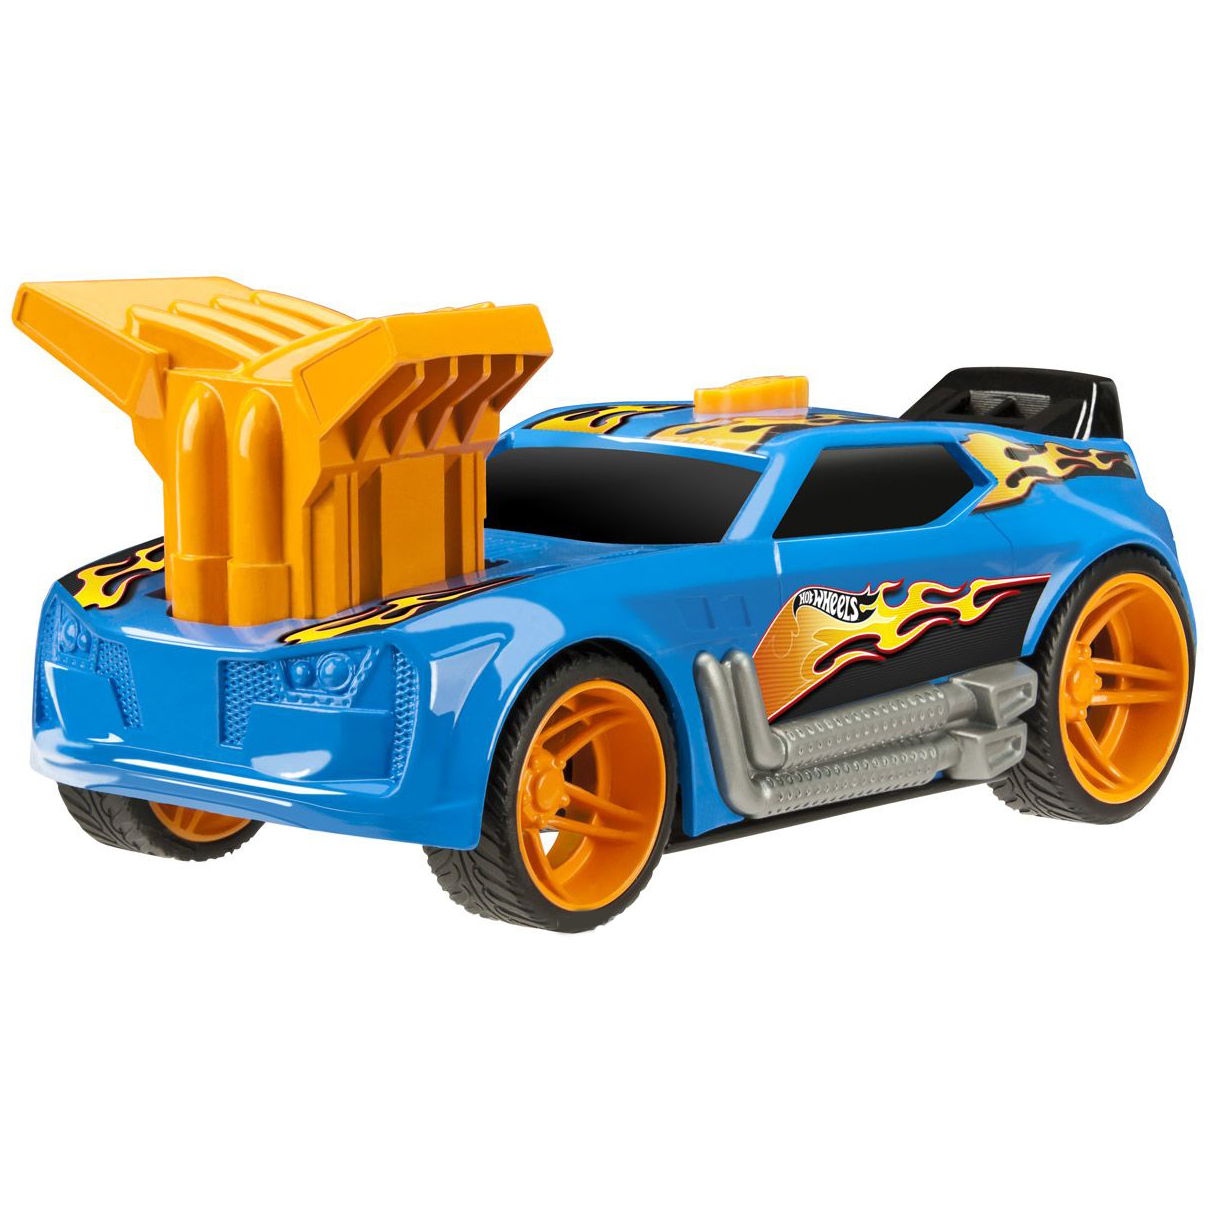 Hot Wheels Машинка Turbo Rush - Twinduction, синяя, 19 см